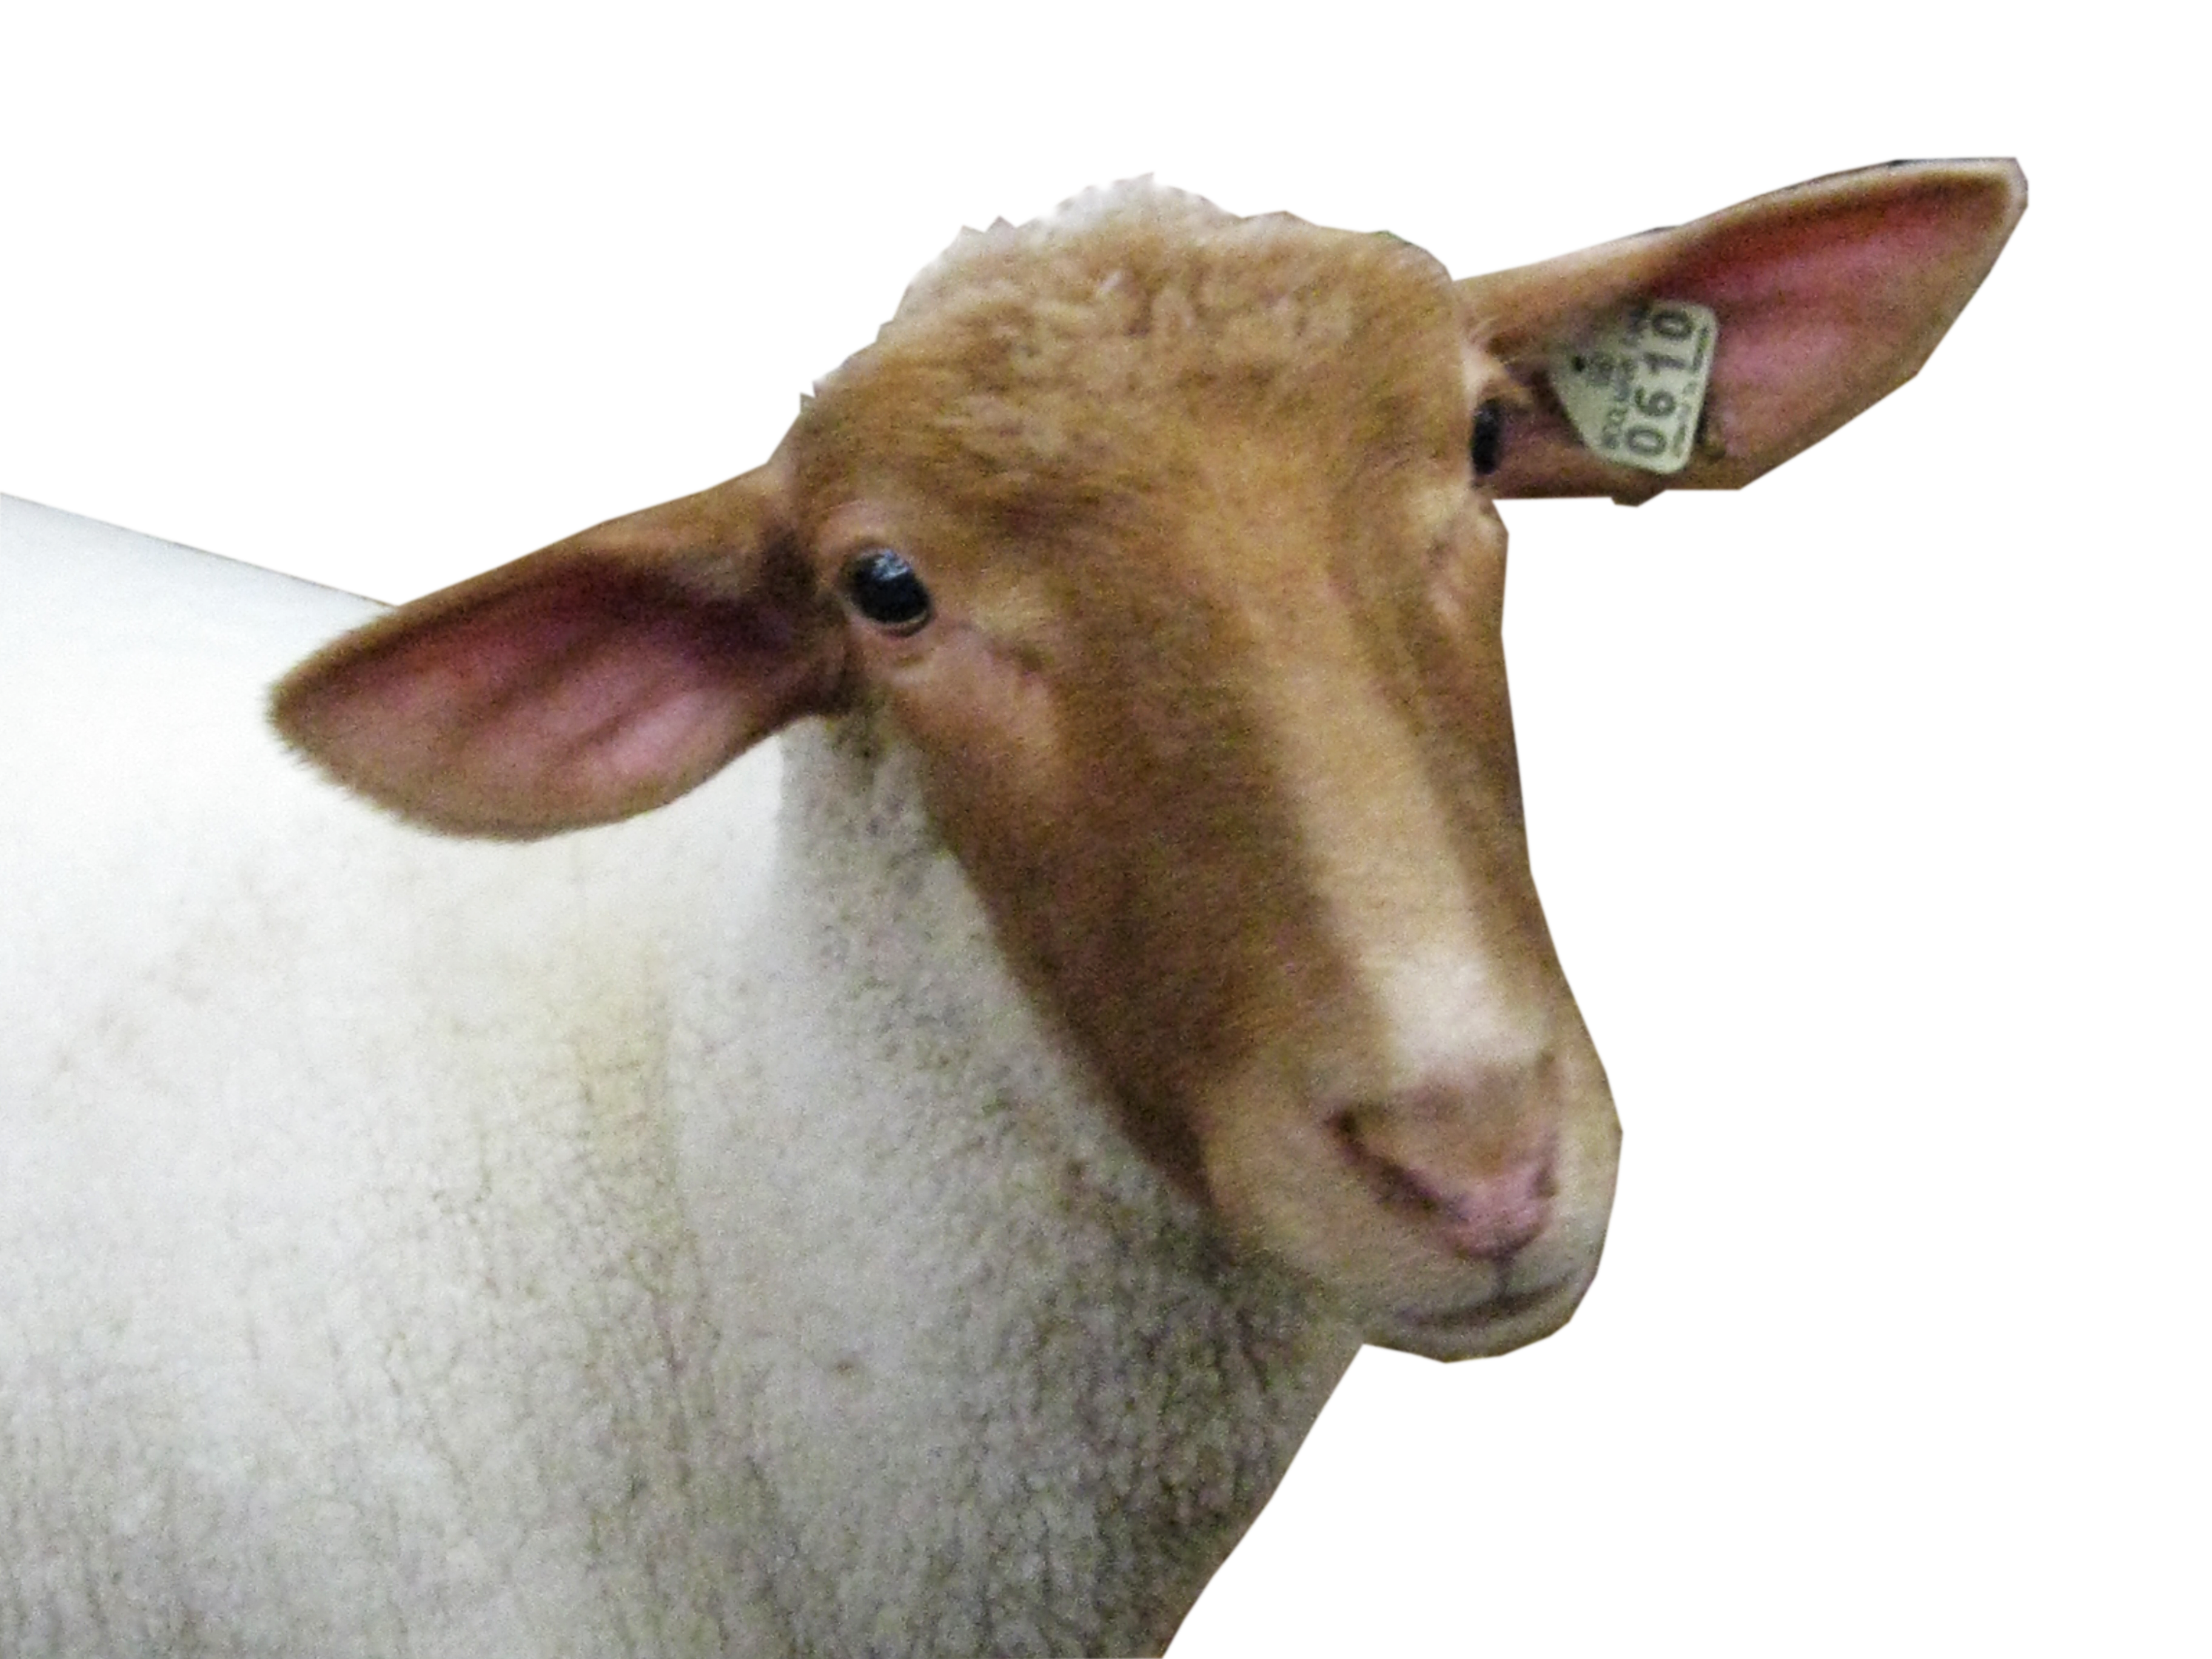 羊头